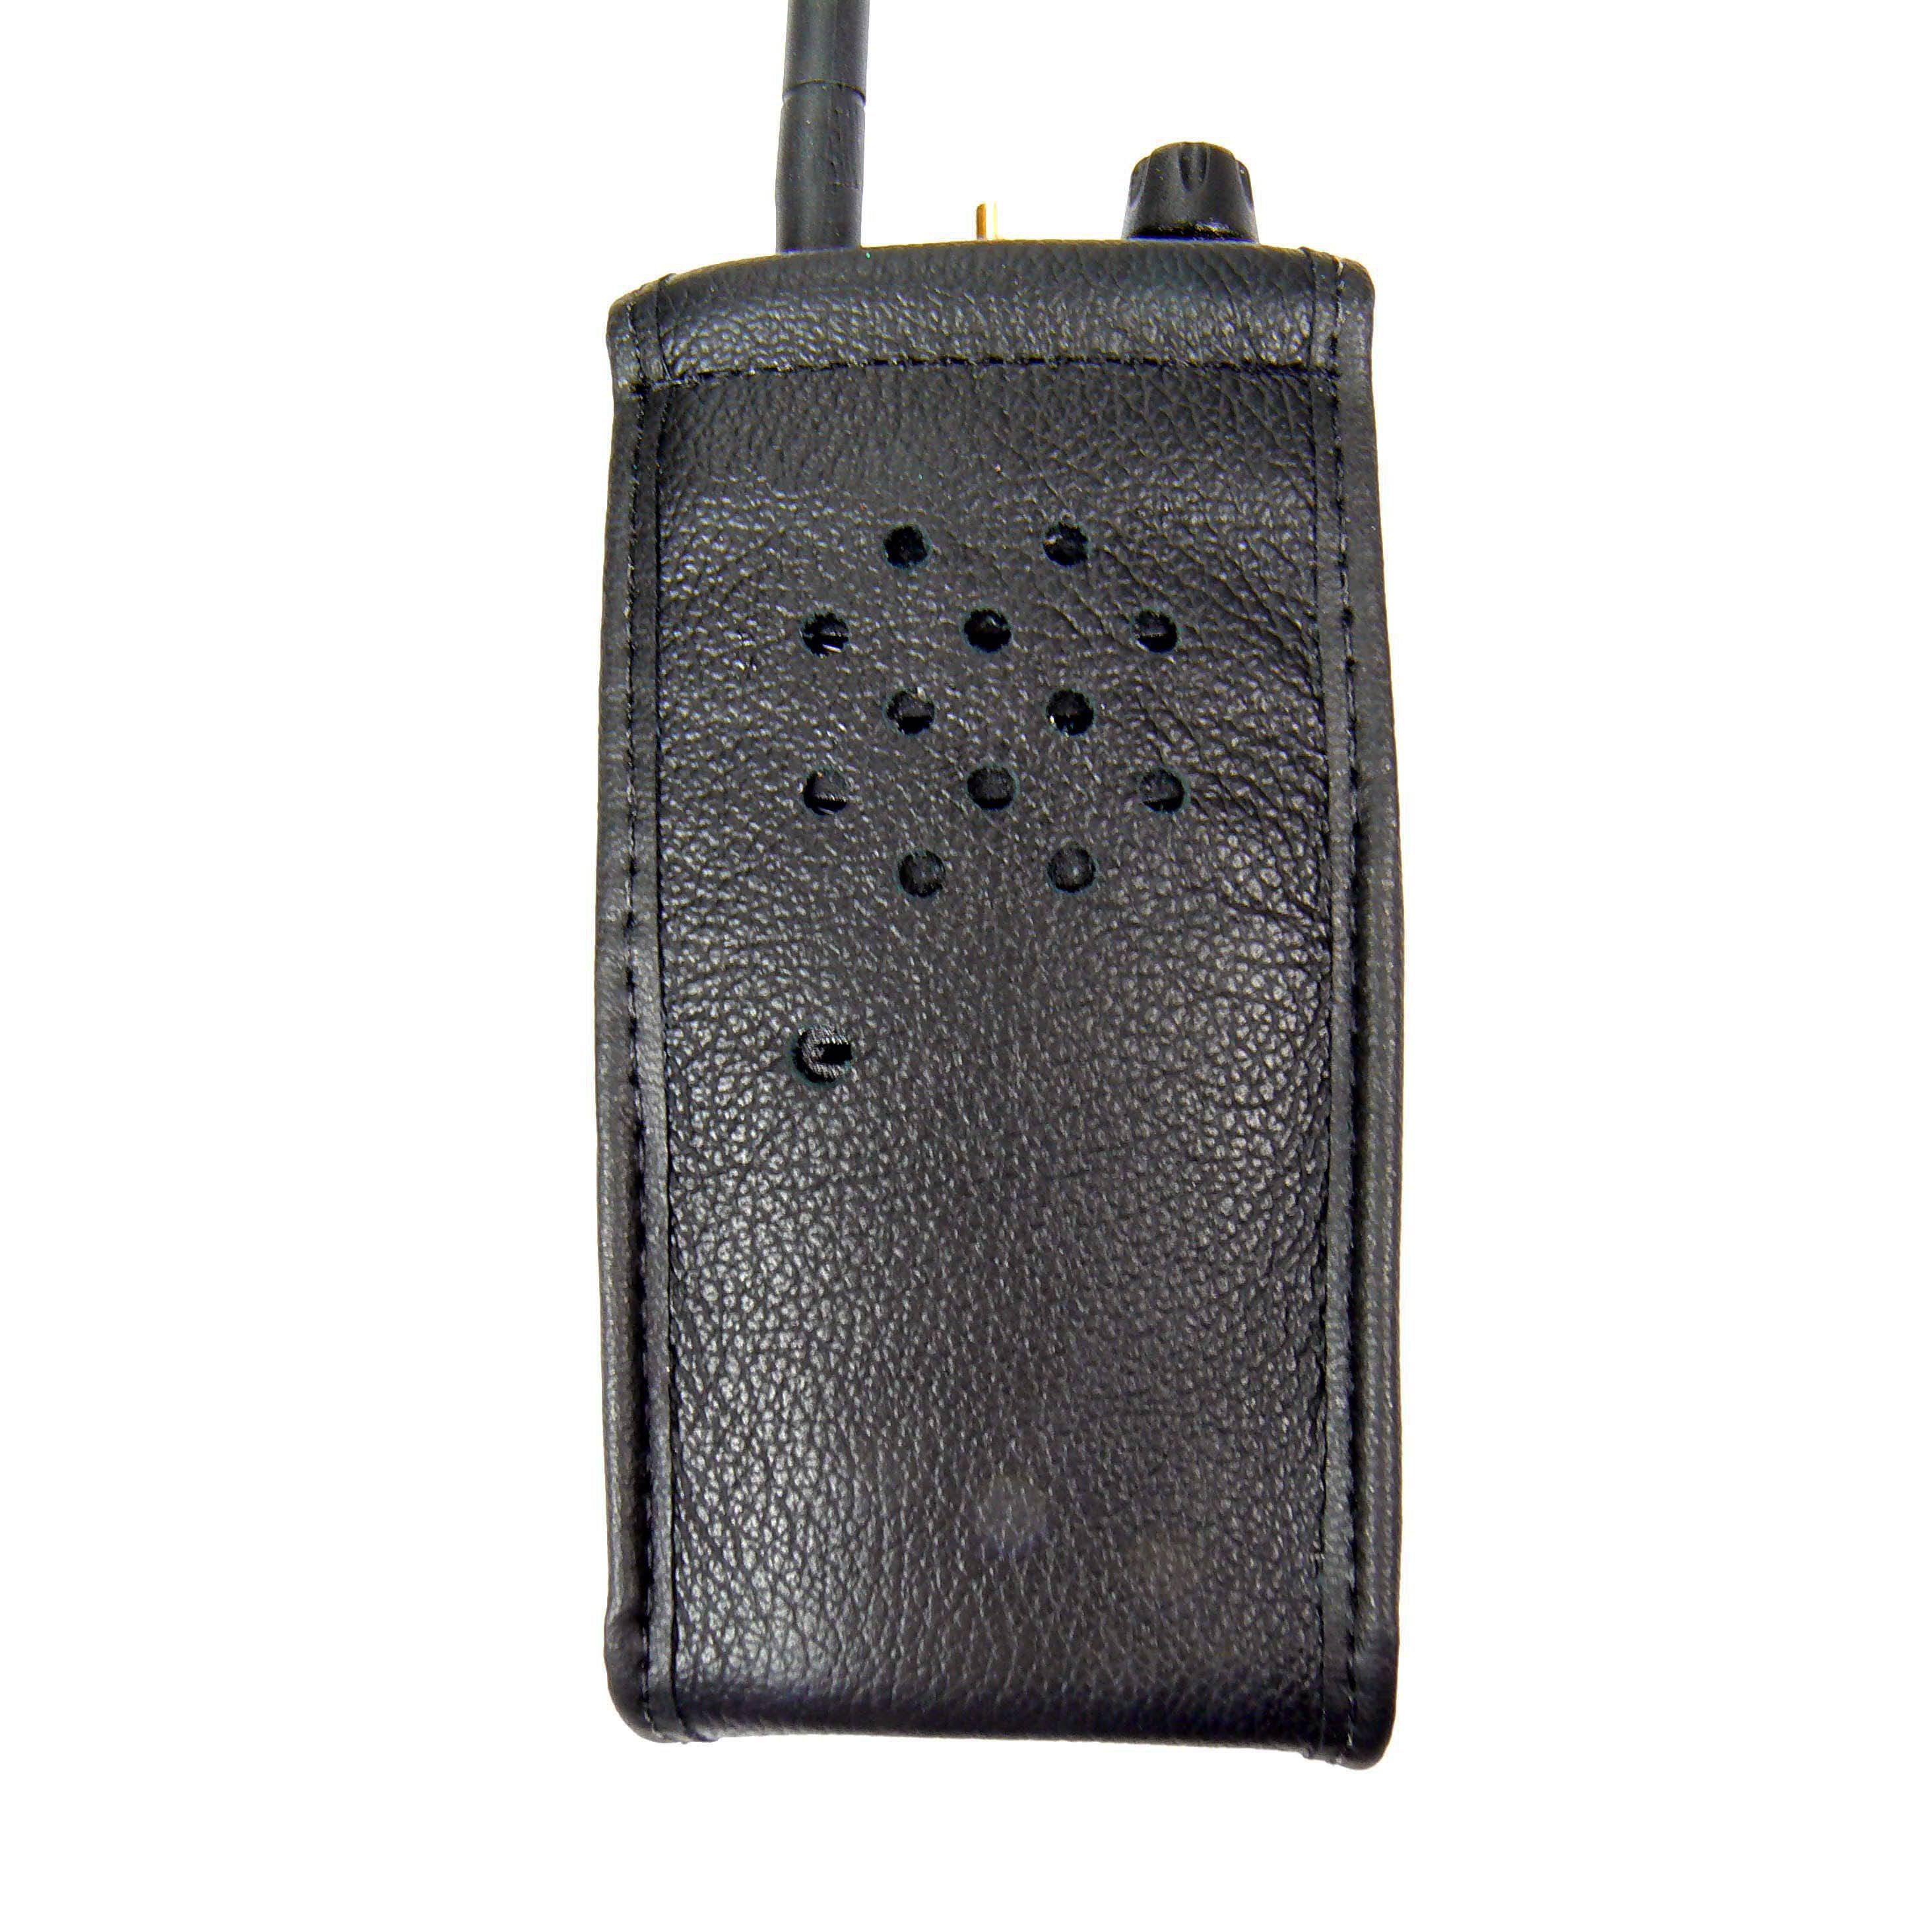 Maxon PMR446 soft leather radio case